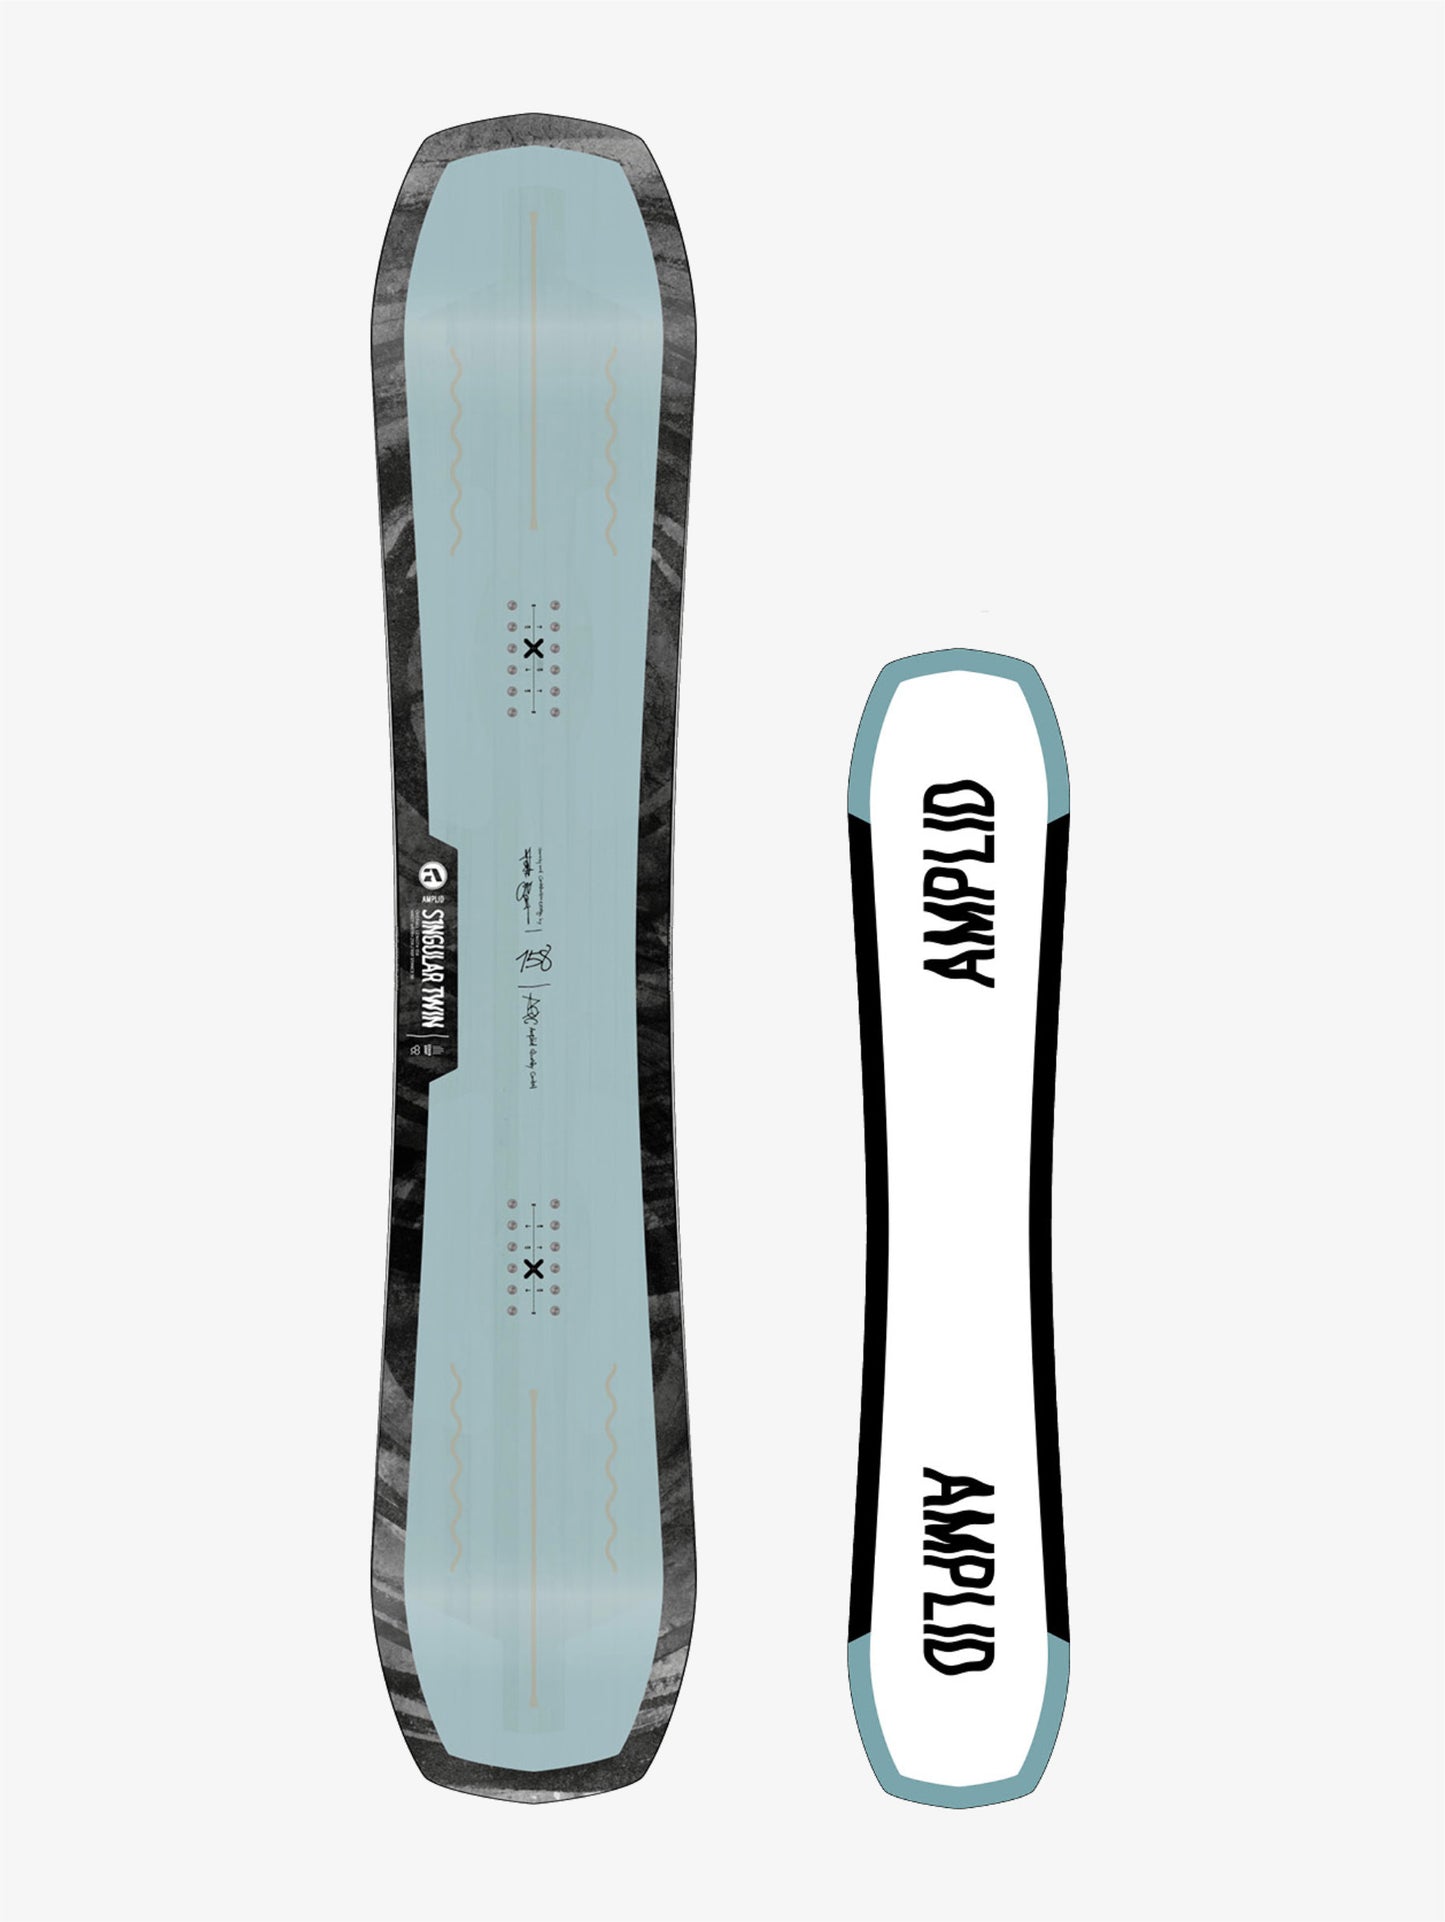 Singular Twin snowboard